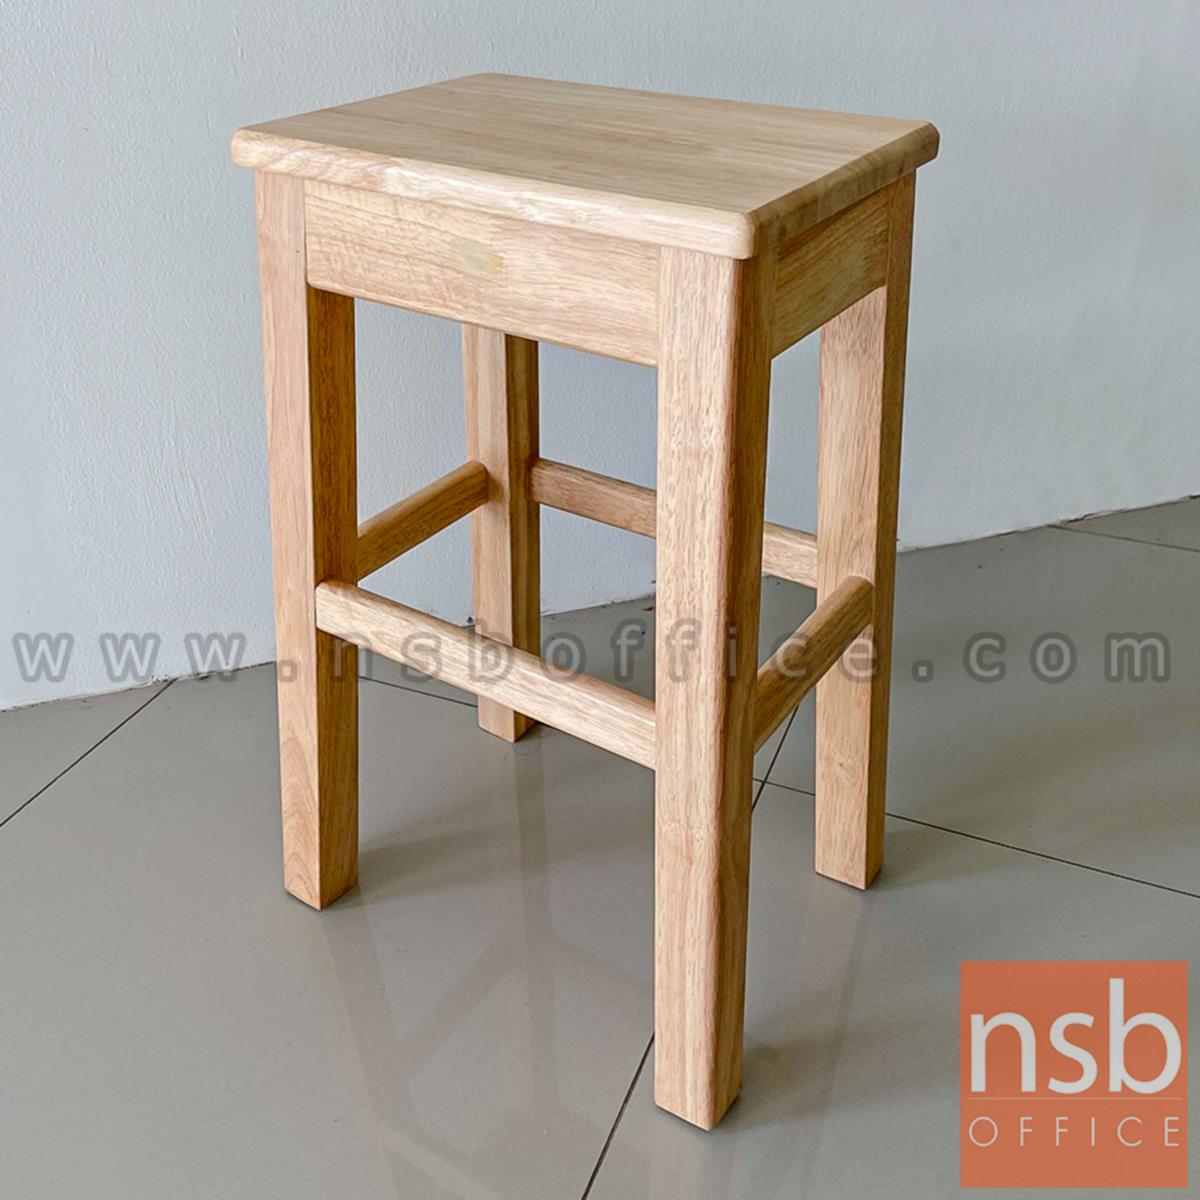 B09A227:เก้าอี้บาร์สตูลที่นั่งเหลี่ยม รุ่น Baden (บาเด็น) ขนาด 39.5W cm. โครงไม้ทั้งตัว